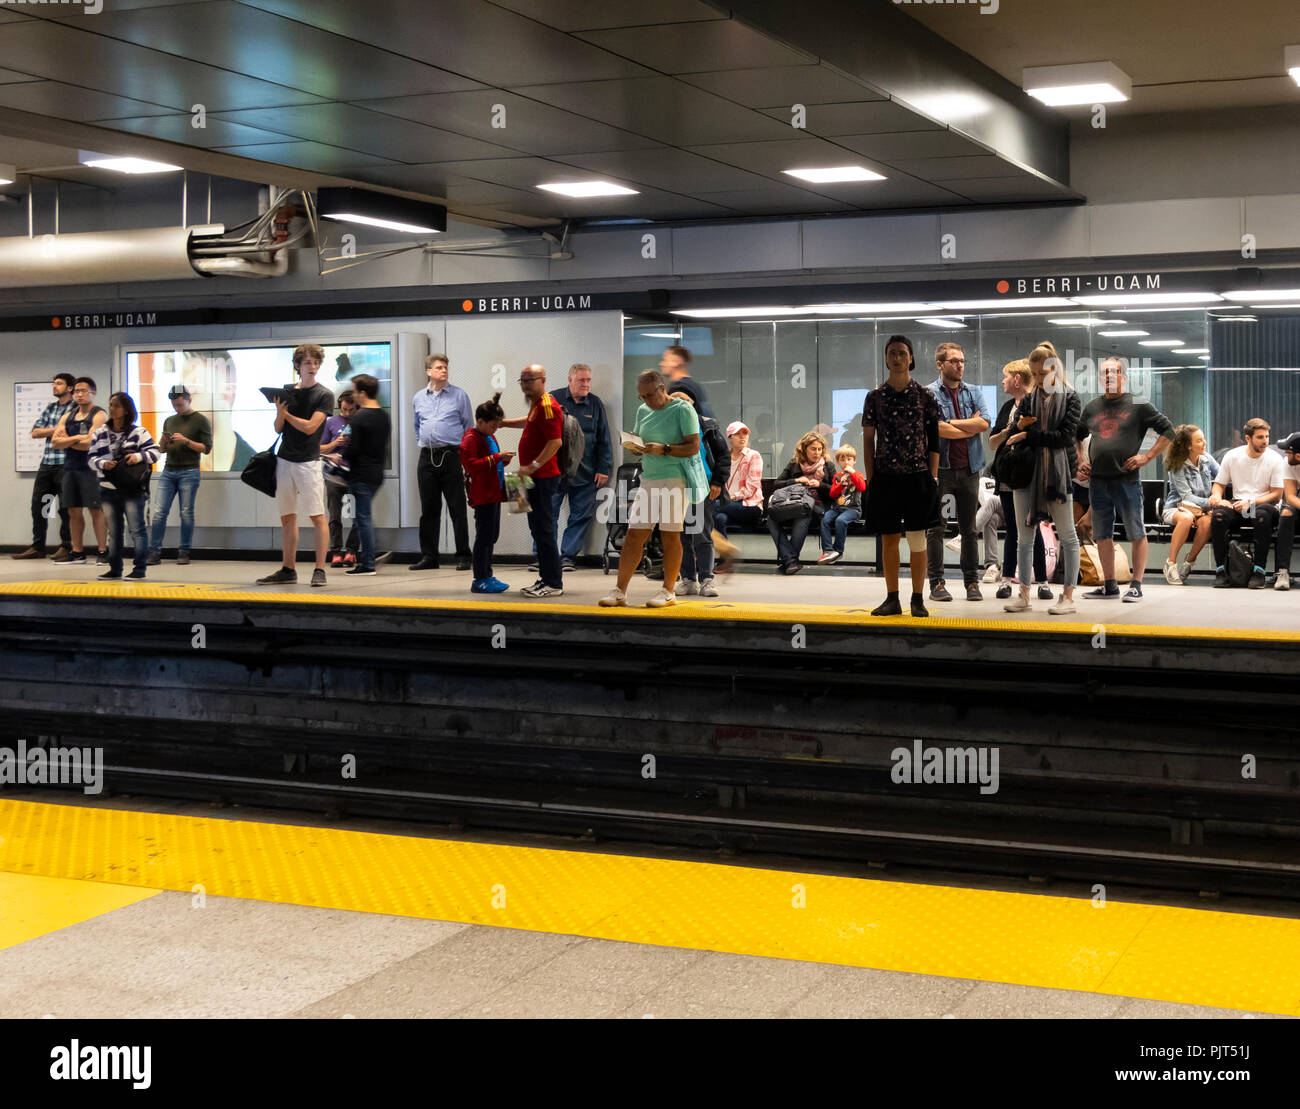 Personnes en attente d'un train à la station de métro Berri-Uqam à Montréal, Québec, Canada Banque D'Images